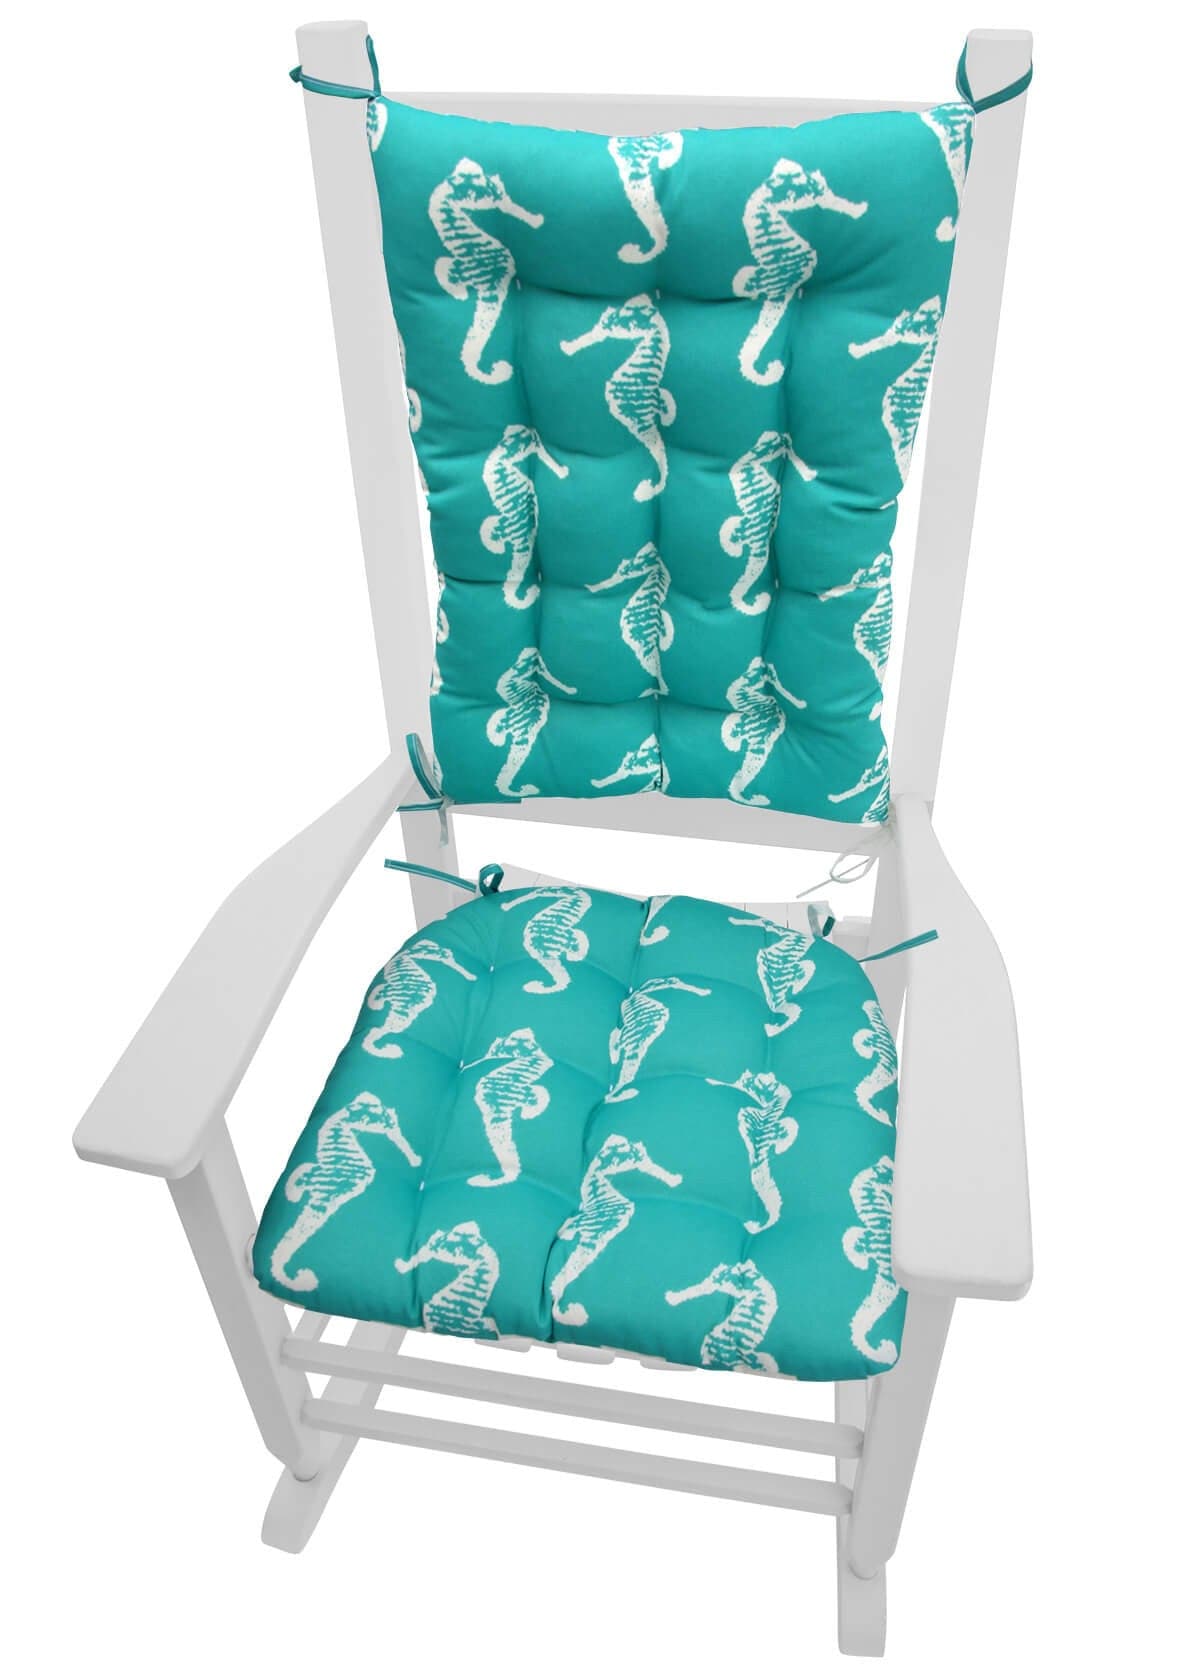 Sea Shore Seahorse Aqua Porch Rocker Cushions - Indoor / Outdoor - Latex Foam Fill - Fade Resistant